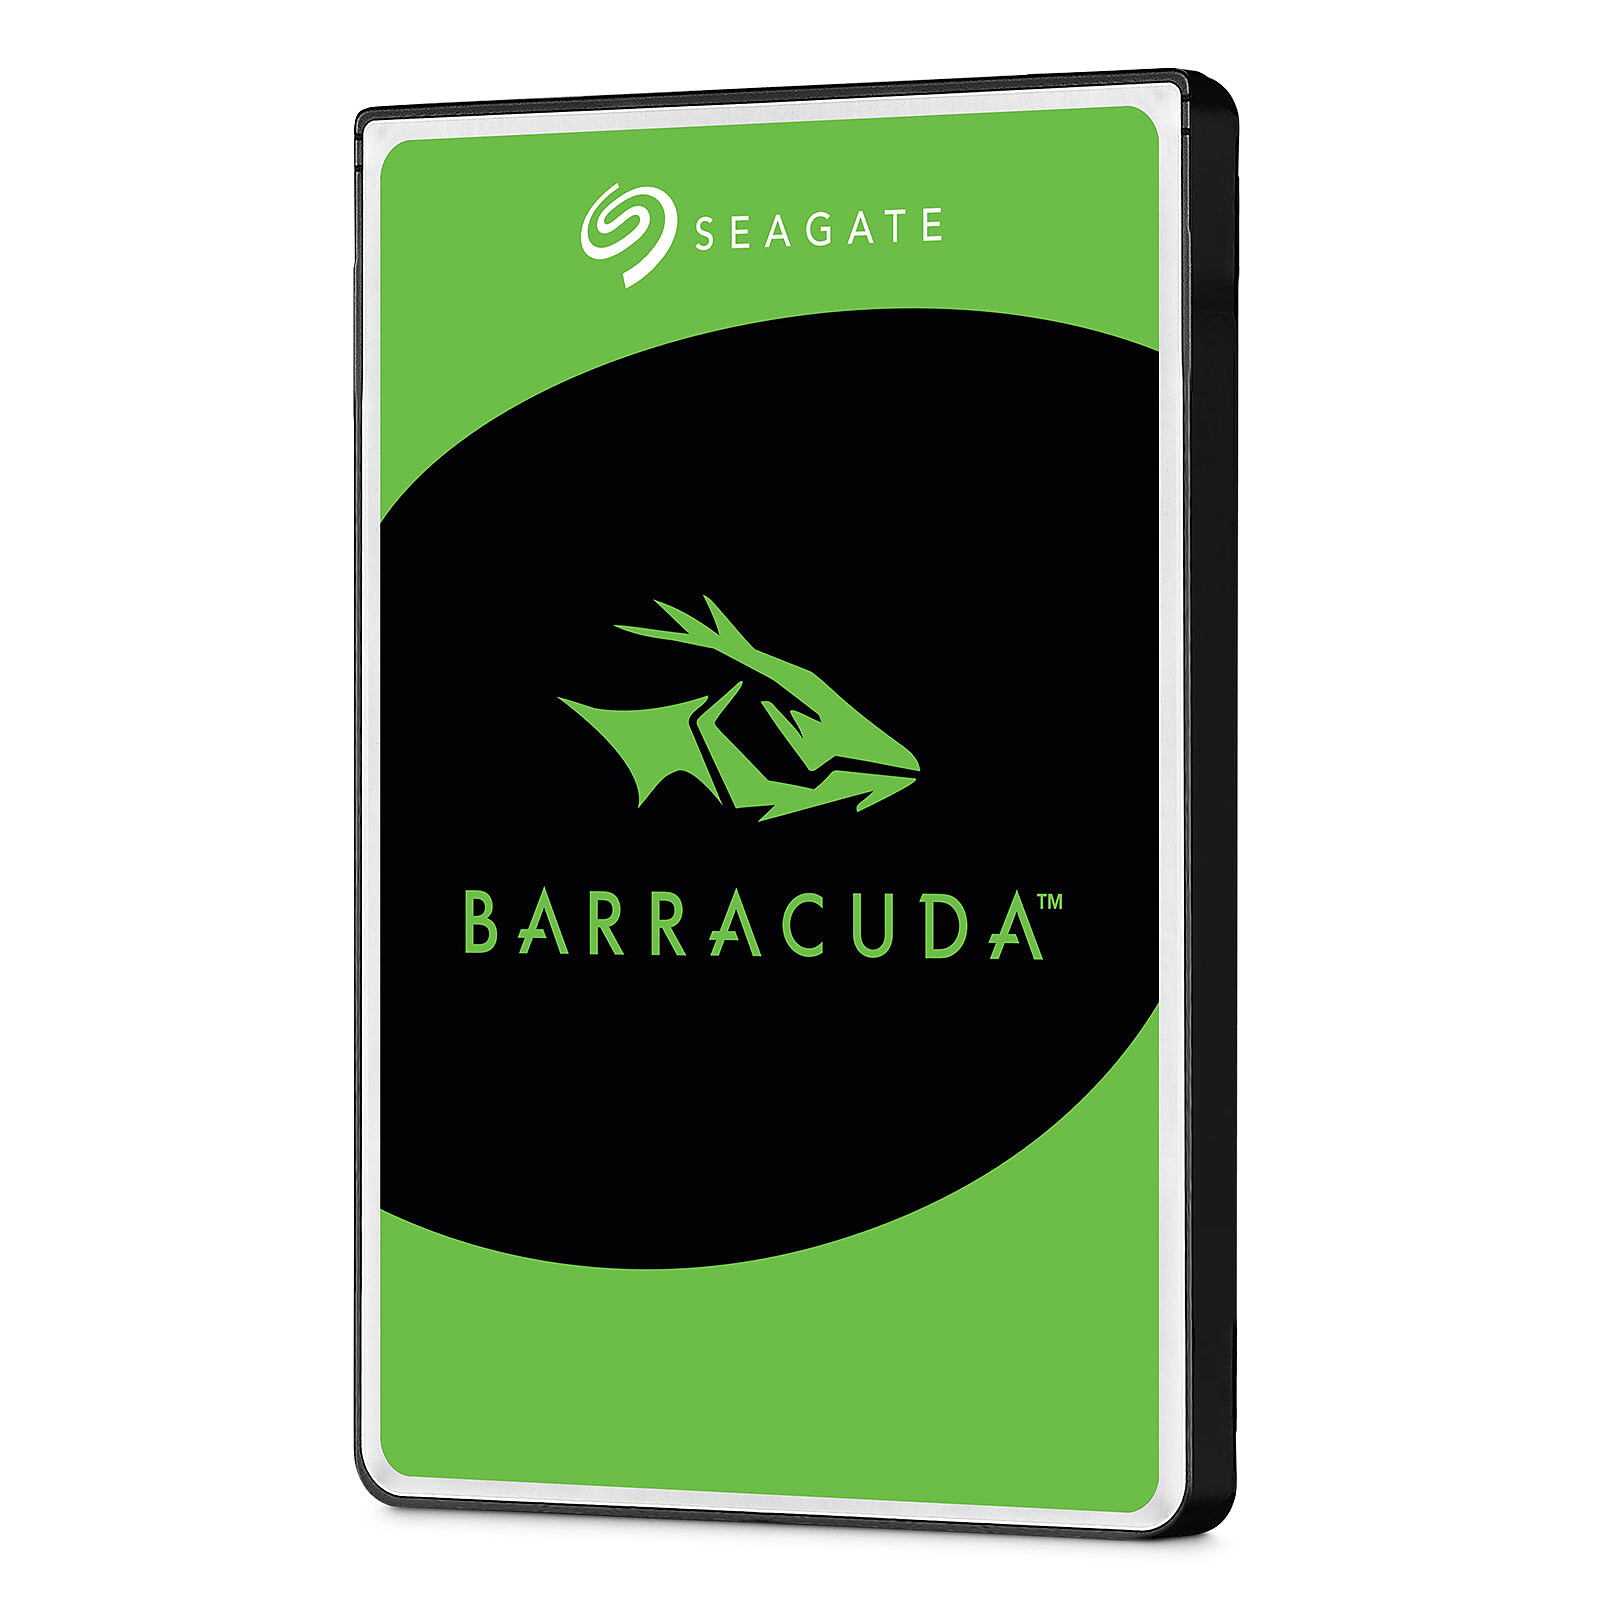 Seagate Guardian BarraCuda ST500LM030 - hard drive - 500 GB - SATA 6Gb/s -  ST500LM030 - Internal Hard Drives 